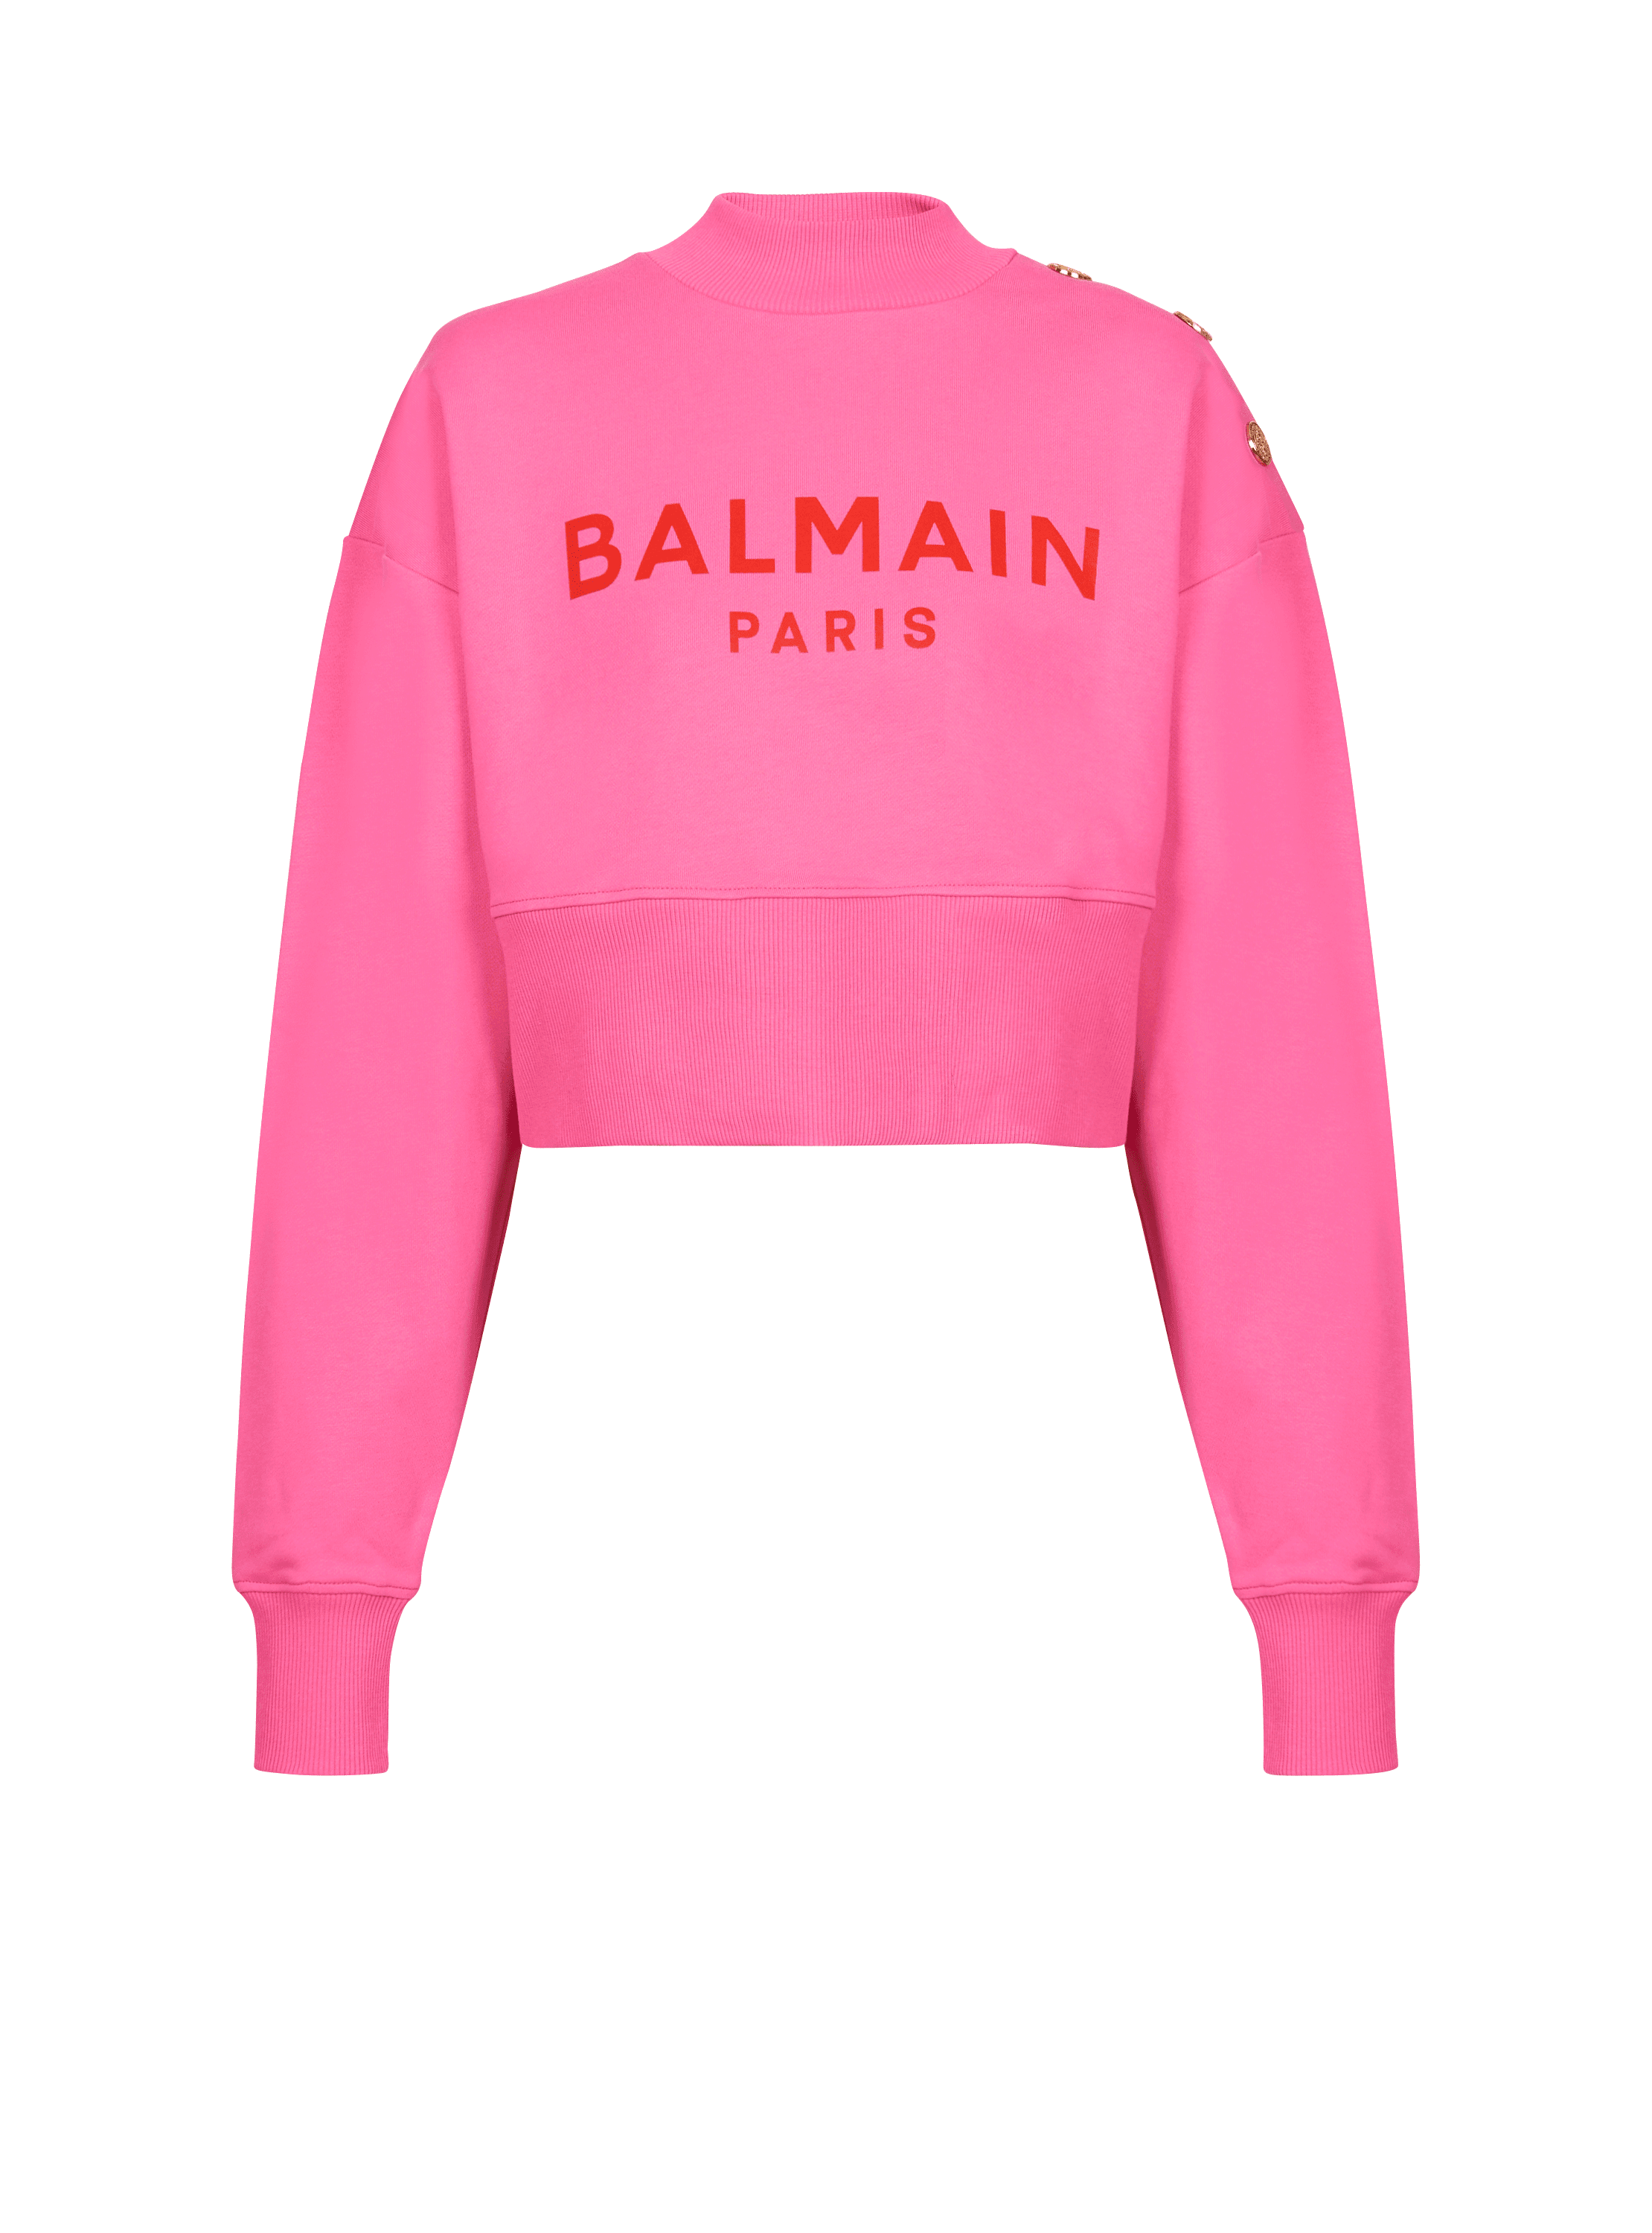 Sudadera corta con logotipo de Balmain Paris estampado